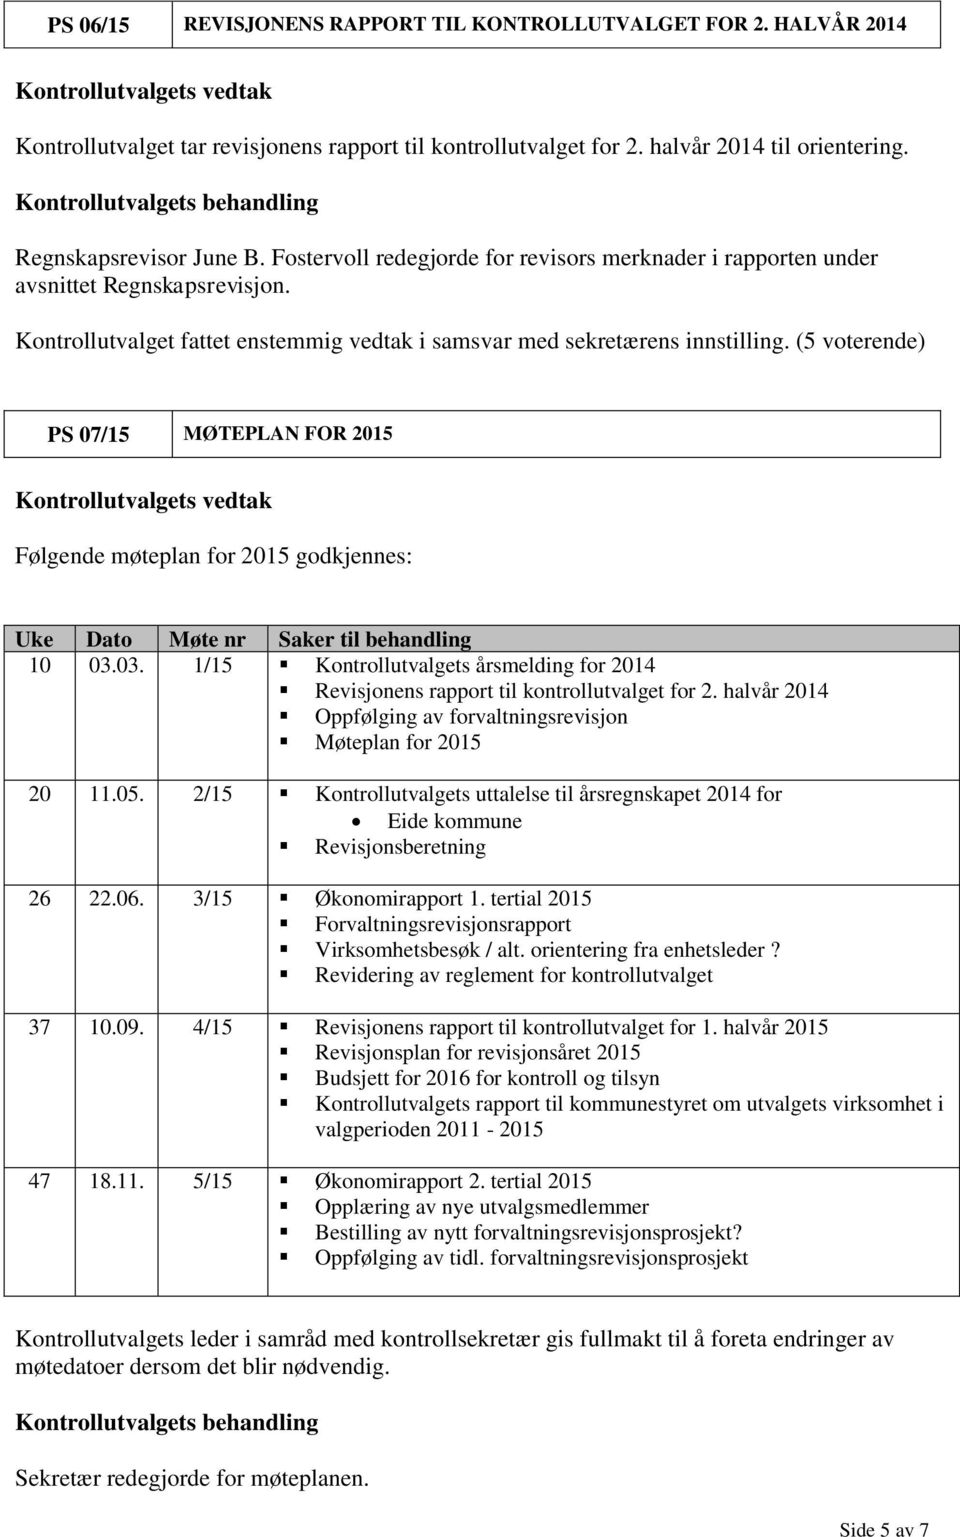 PS 07/15 MØTEPLAN FOR 2015 Følgende møteplan for 2015 godkjennes: Uke Dato Møte nr Saker til behandling 10 03.